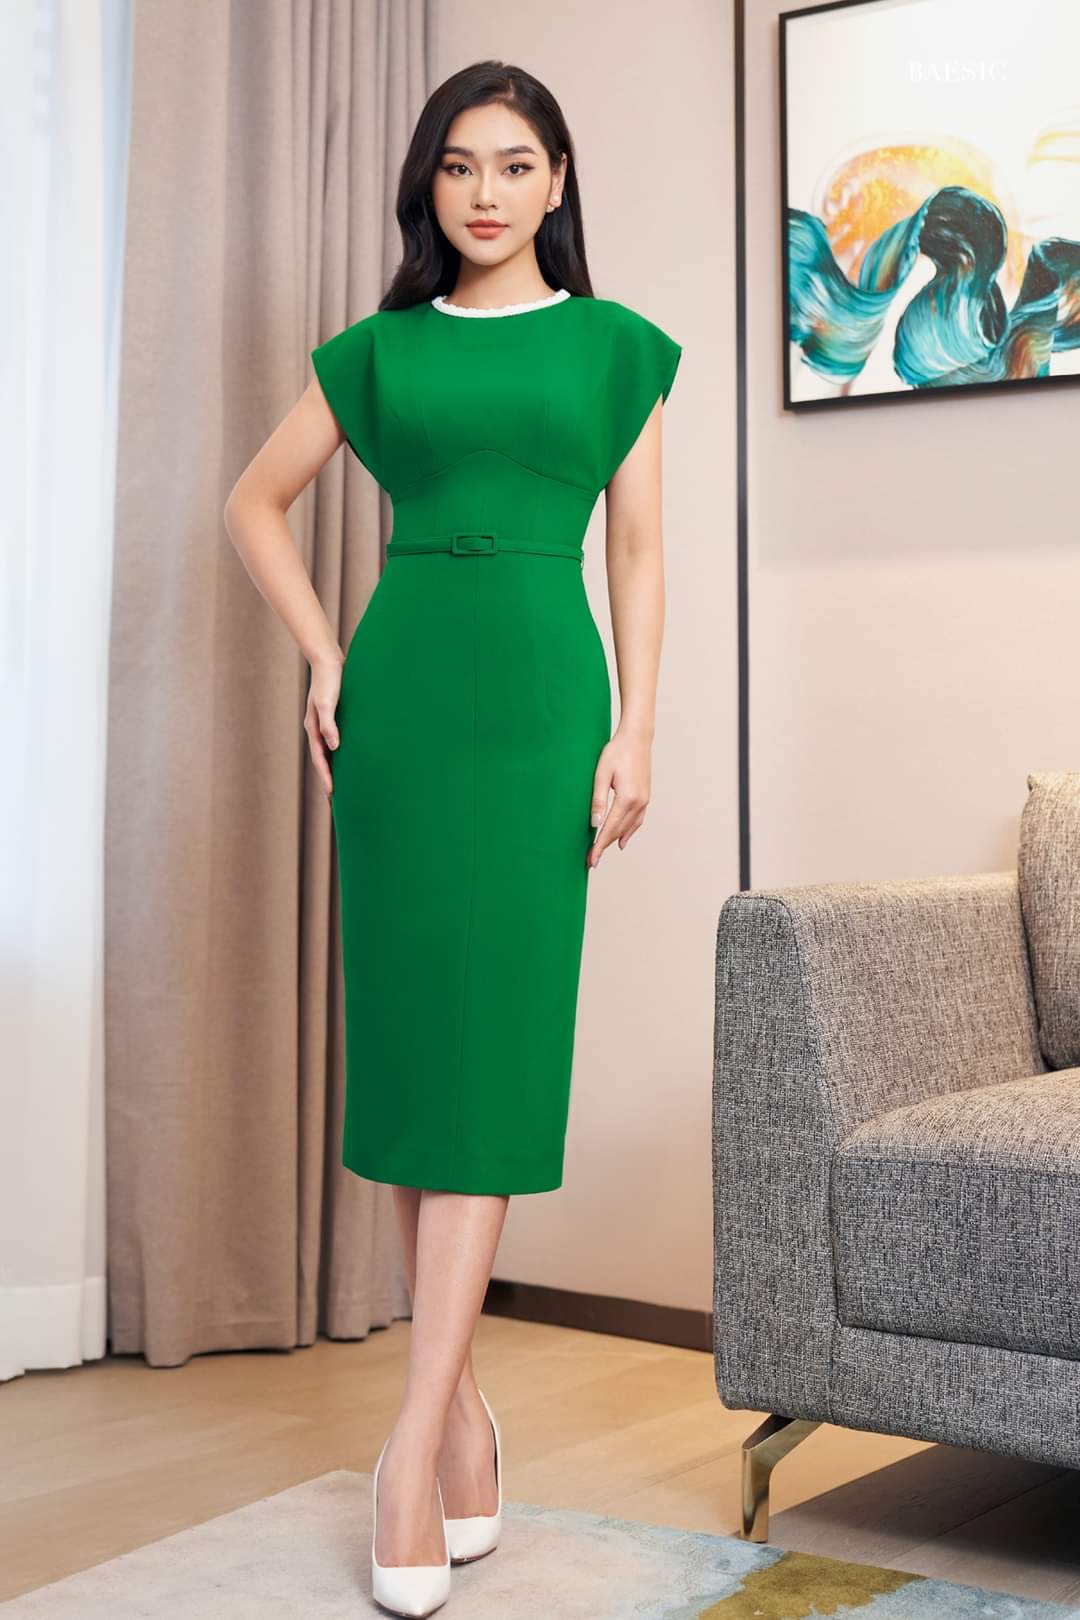 Đầm dạ hội xanh lá cây đắp ren xẻ chân phong cách